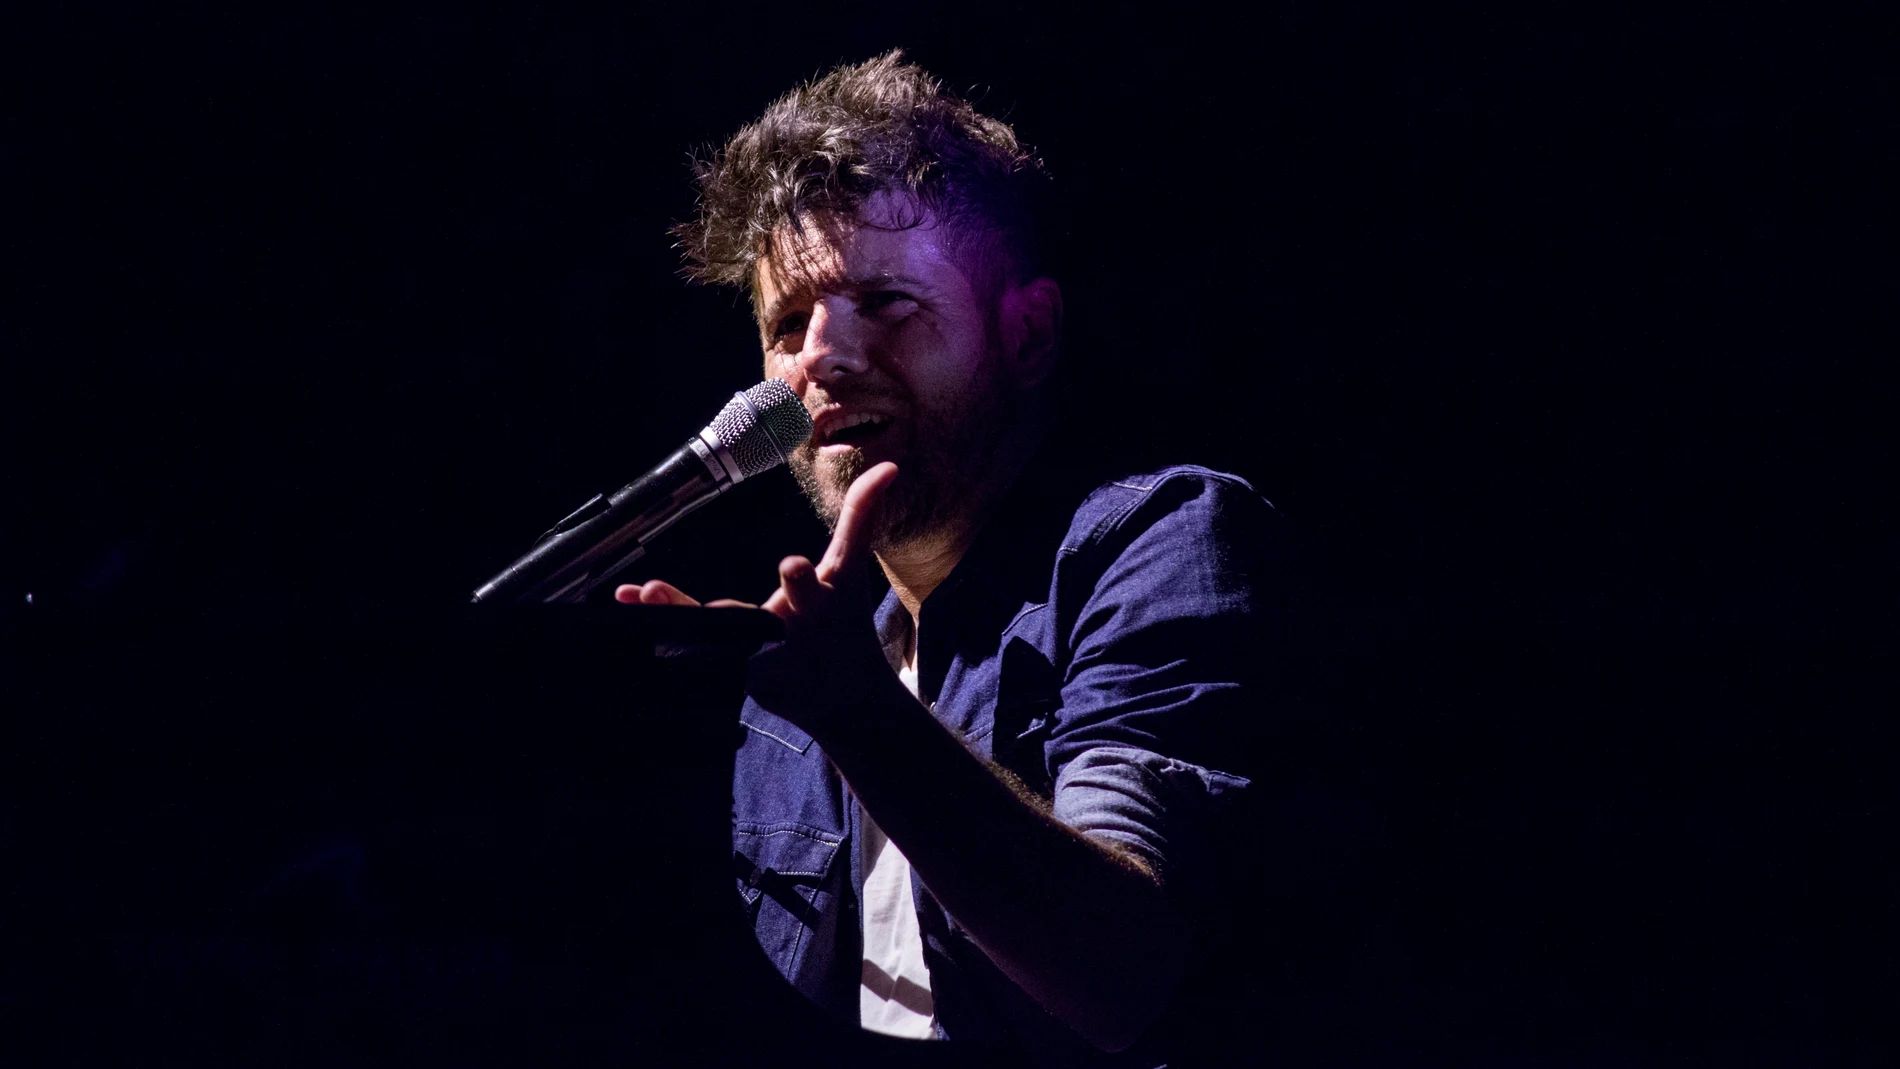 El cantante y compositor Pablo López durante el concierto que ofrece en el Starlite Festival, este martes en la localidad malagueña de Marbella. EFE/Starlite